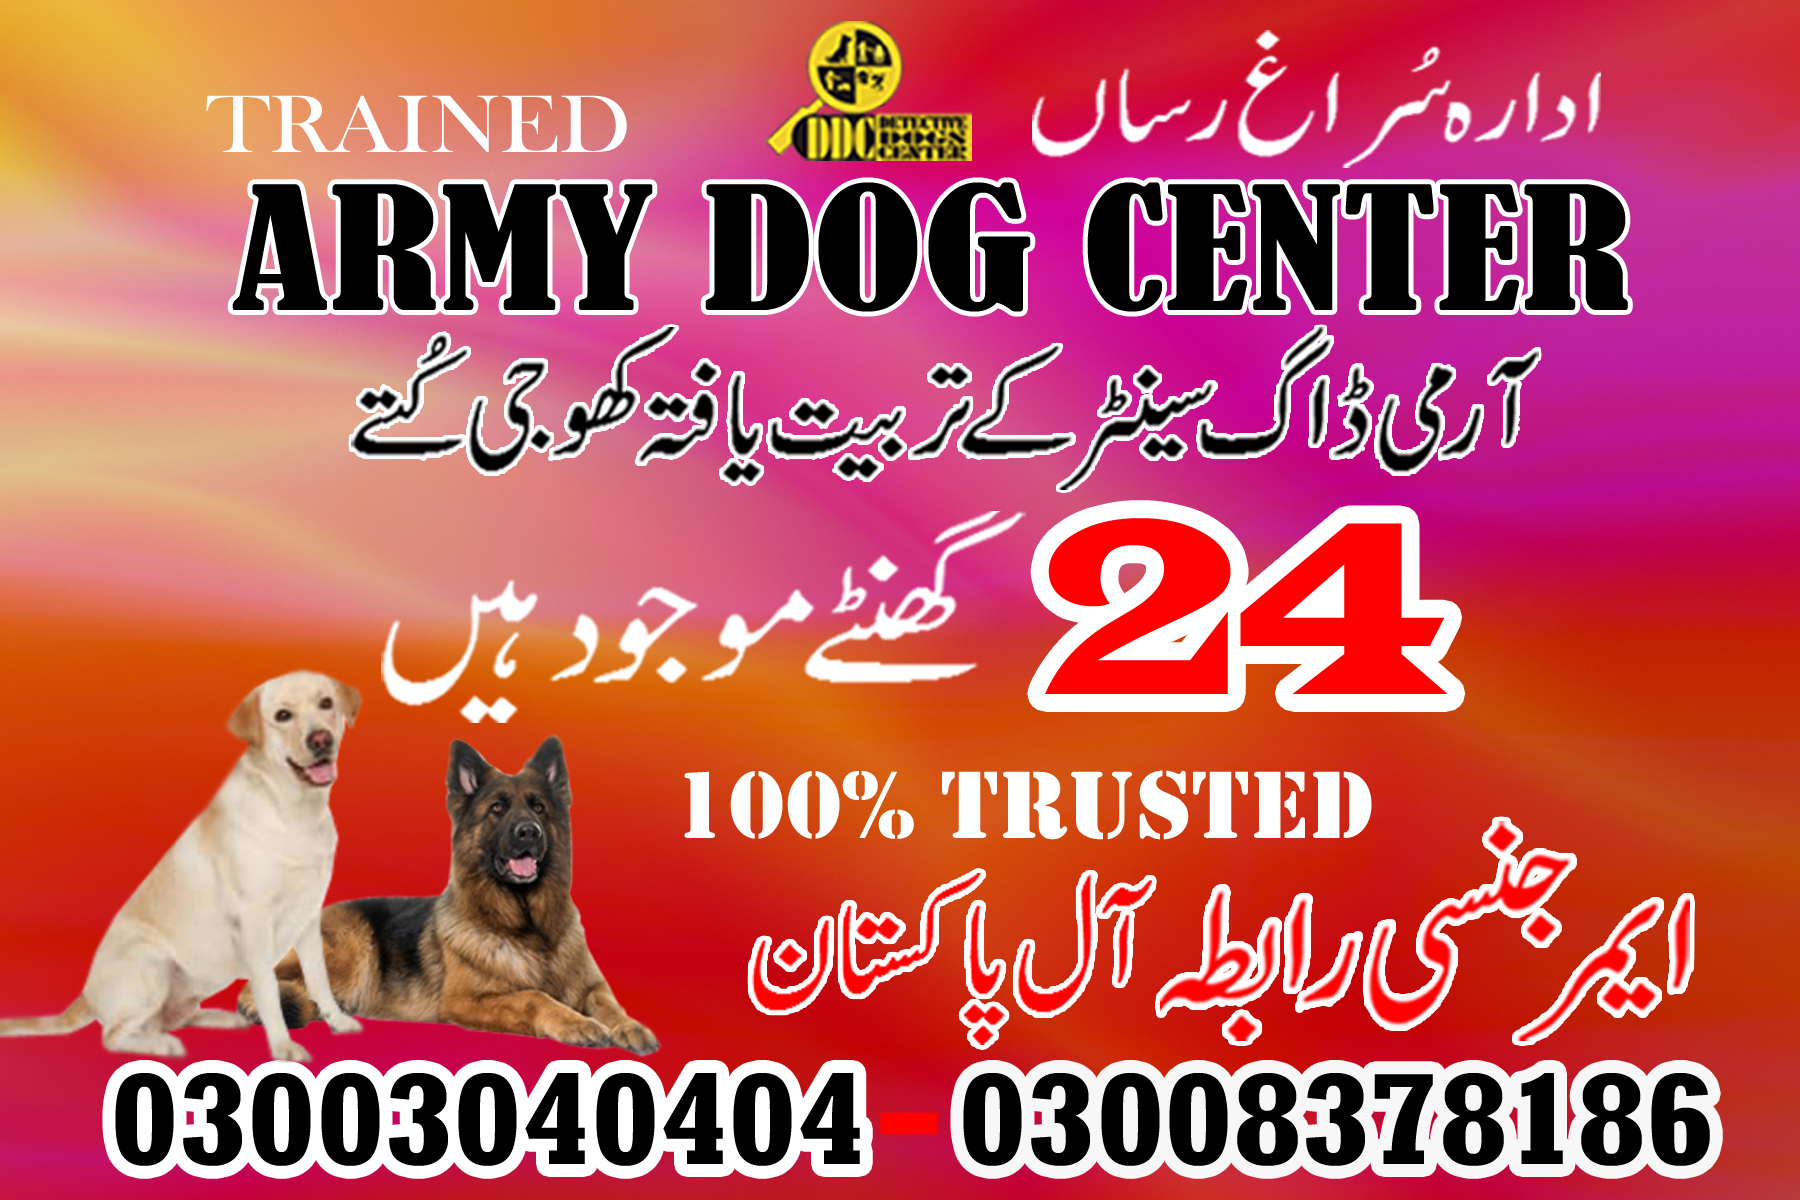 Army Dog Center Okara